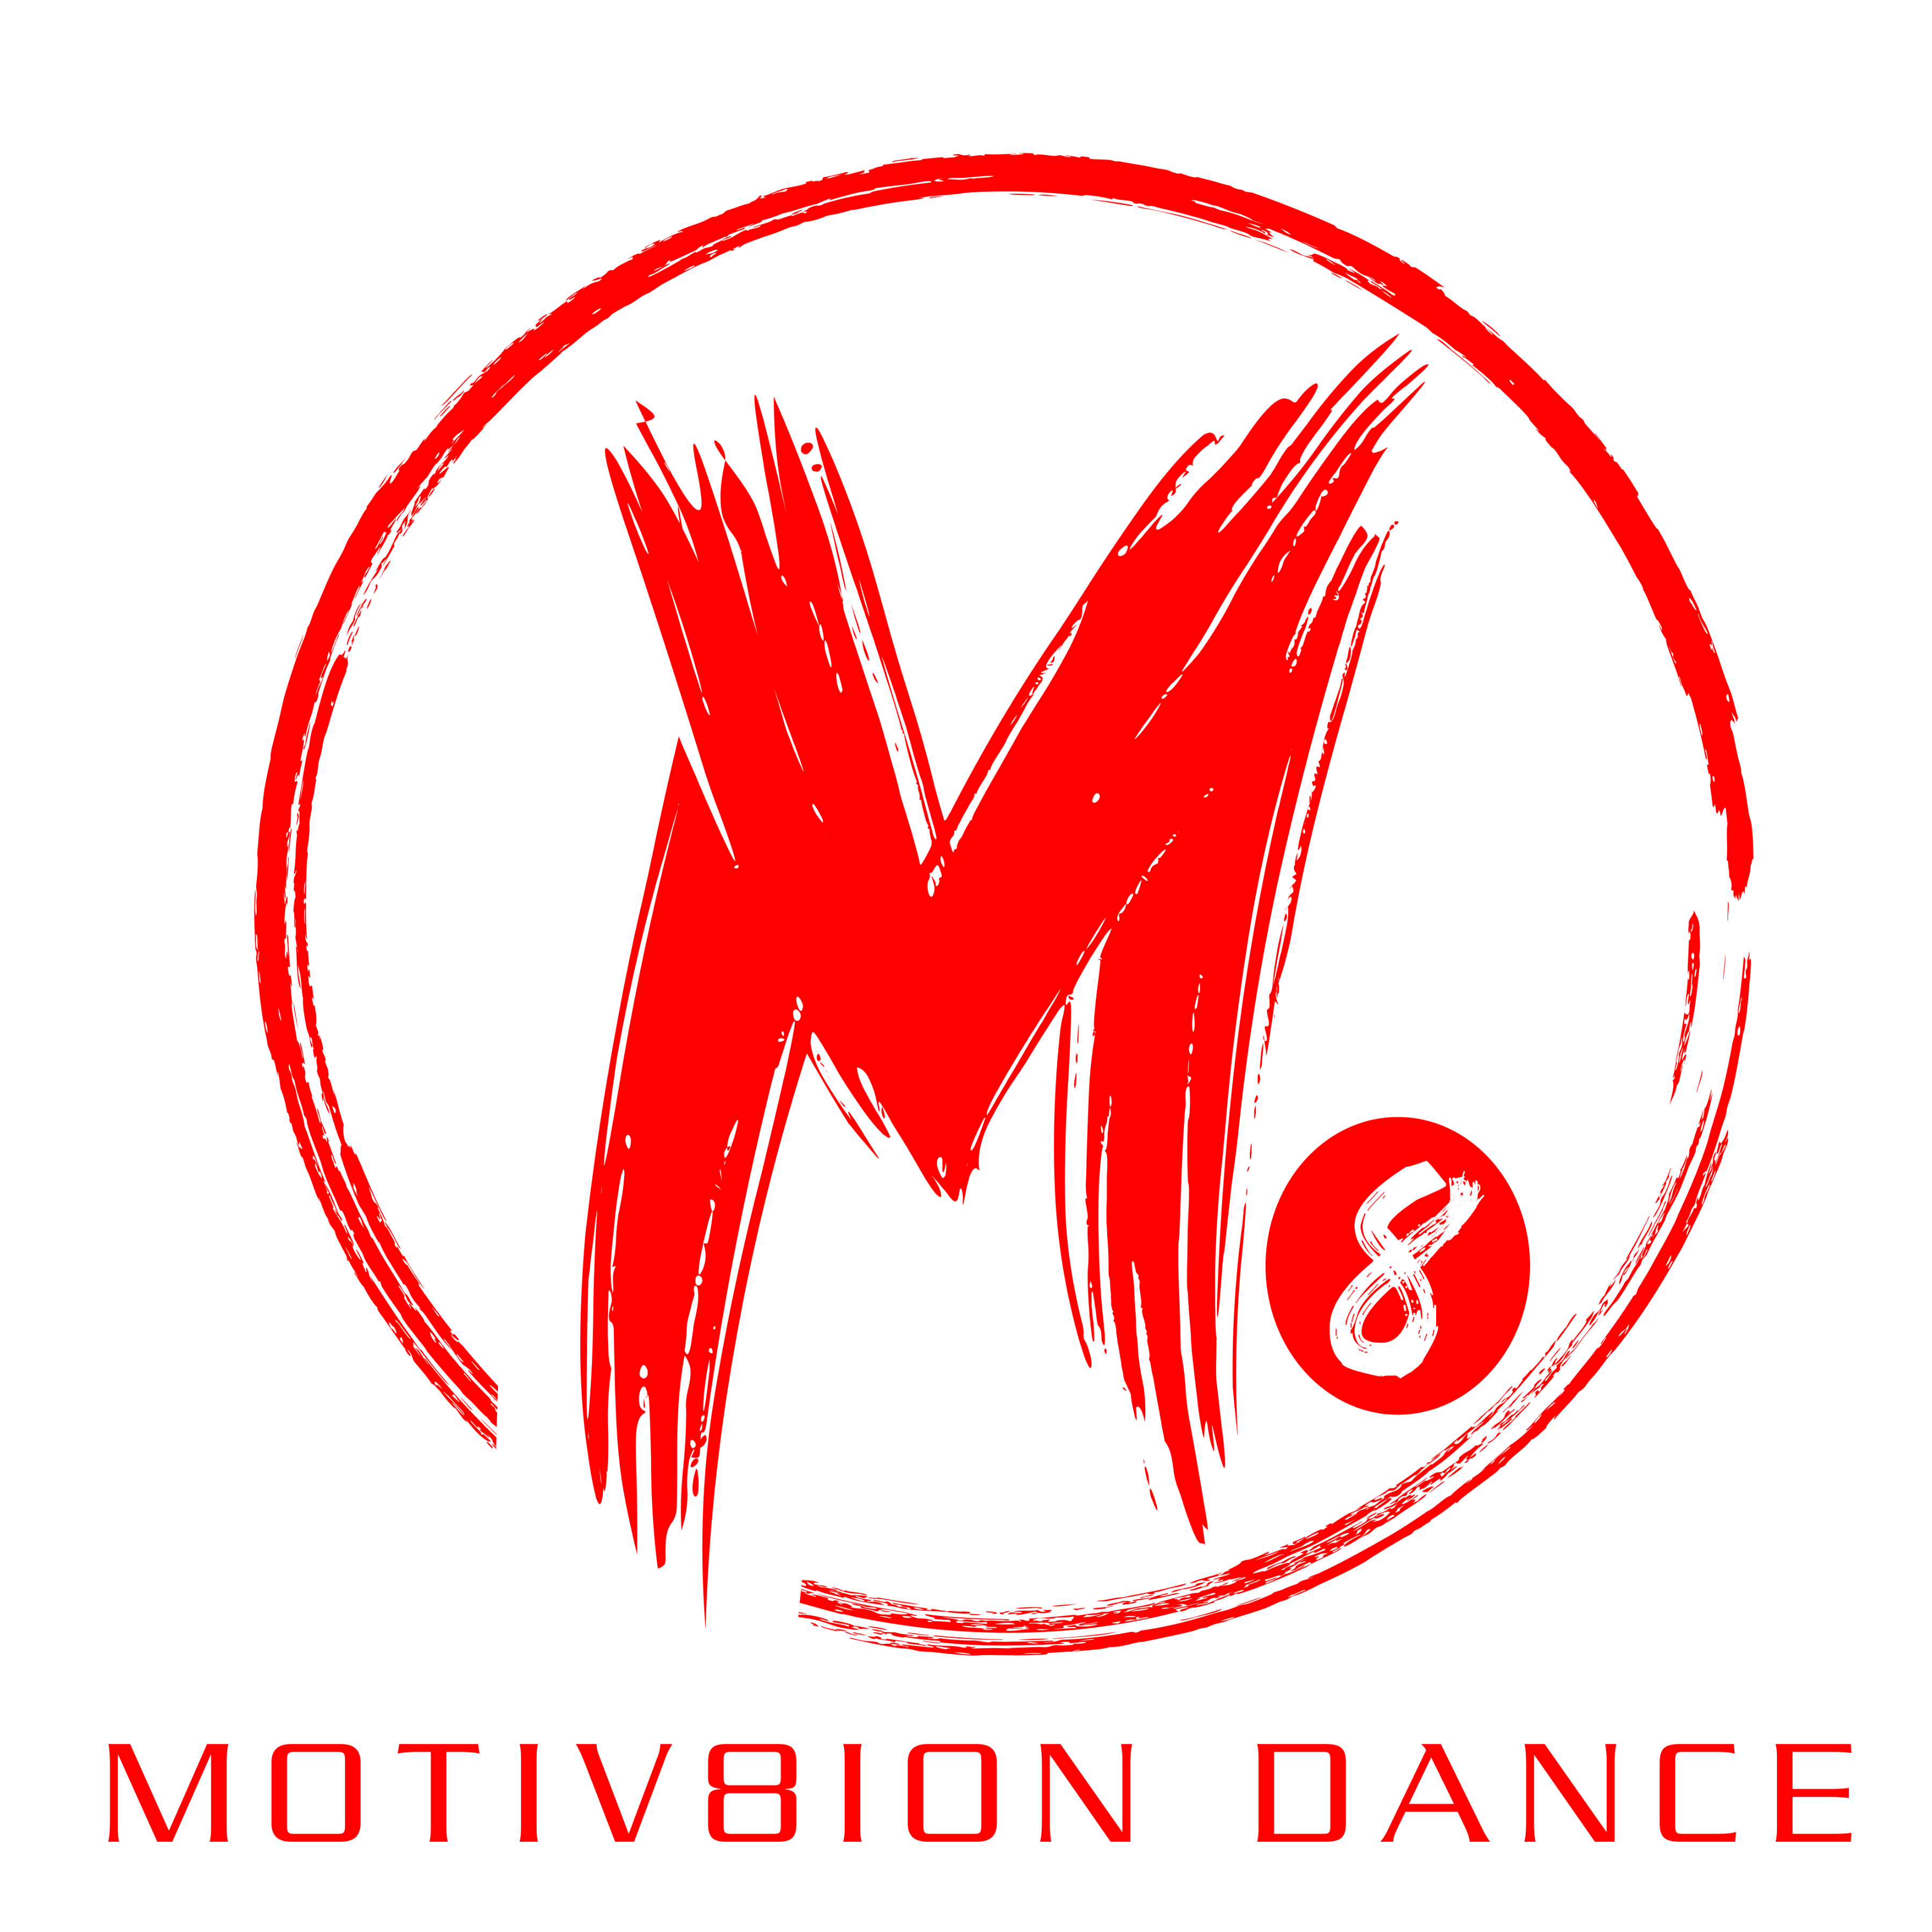 Motiv8ion Dance Studio